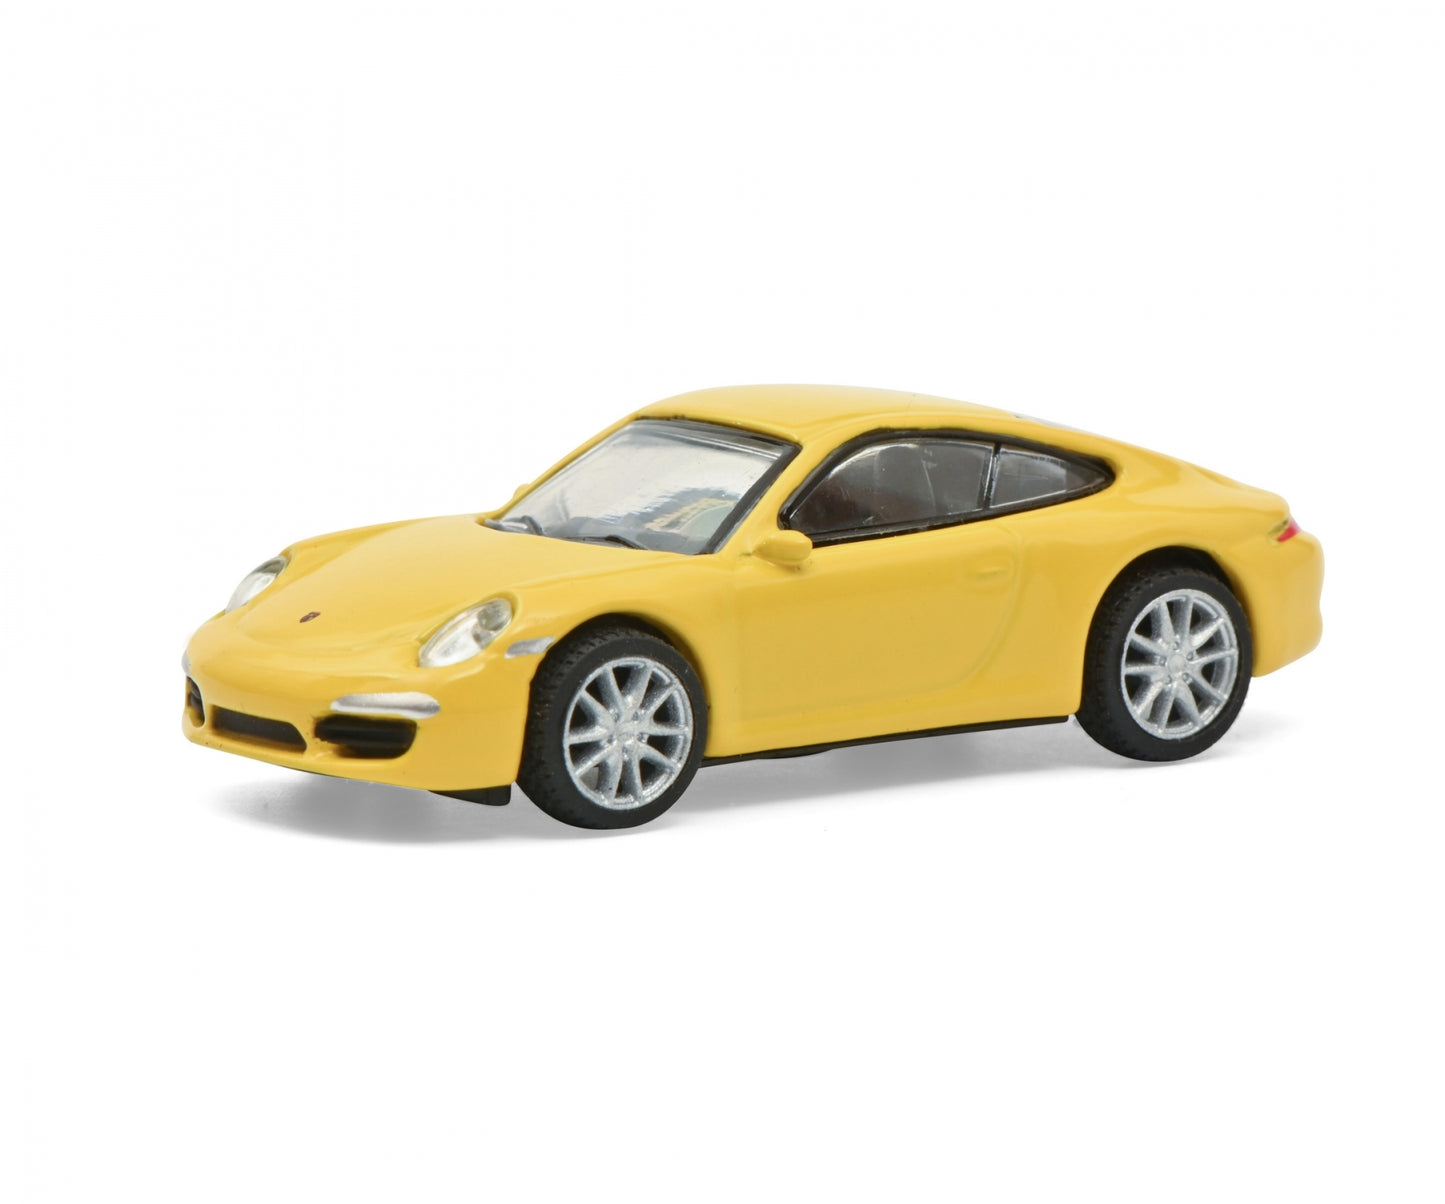 Schuco 1:87 Porsche 911 Carrera S Yellow 452659900